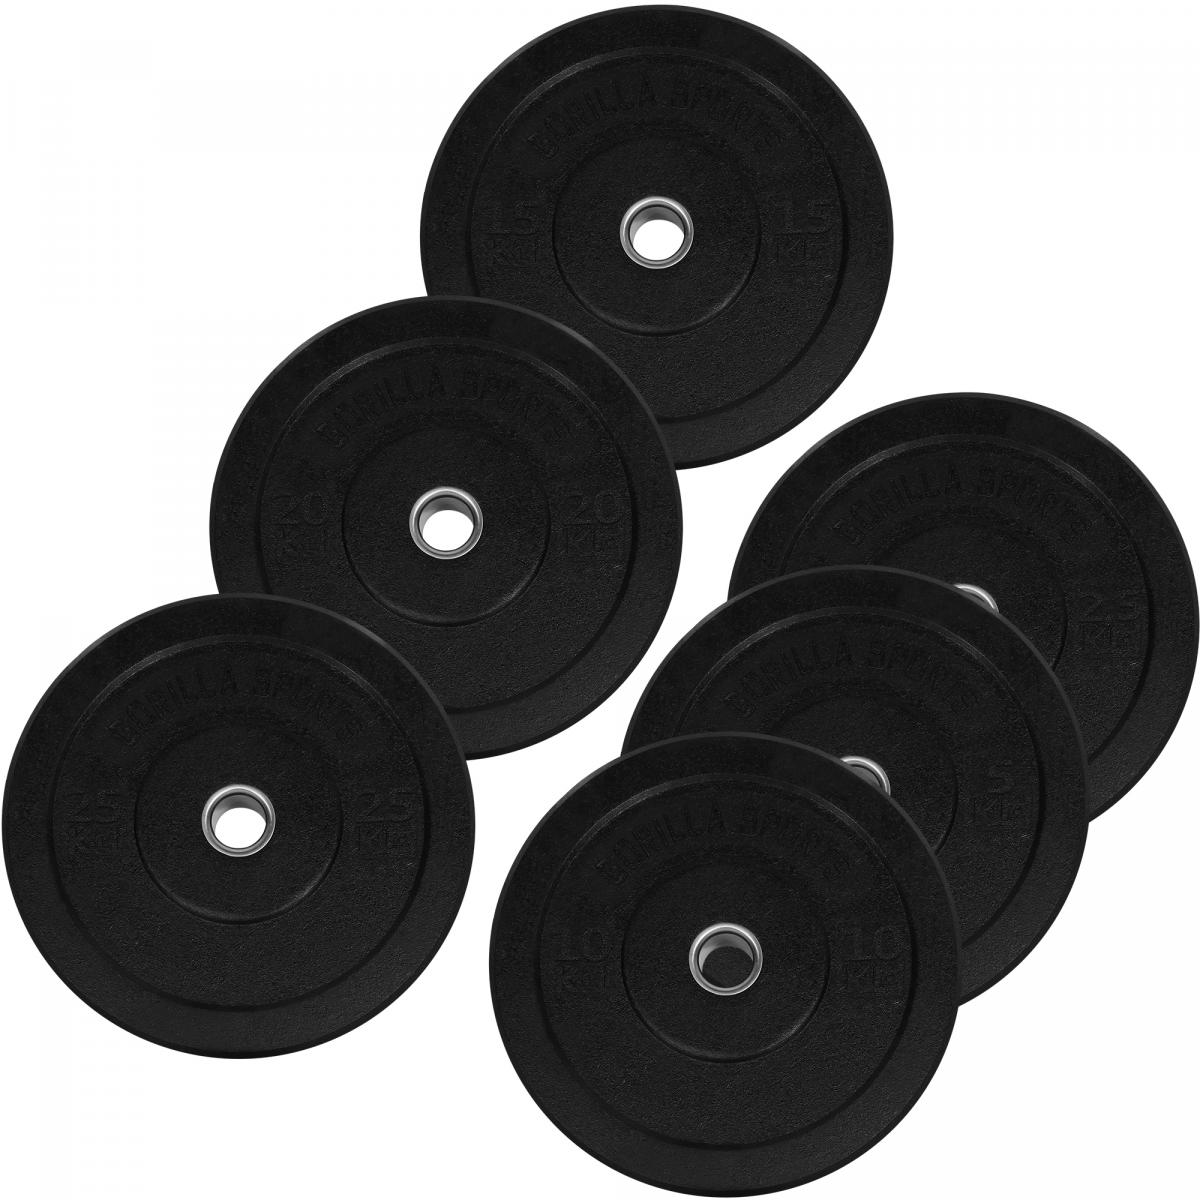 Poids disques olympiques Hi Temp avec absorbeur de chocs - Noir - De 2,5 kg Ã 25 kg